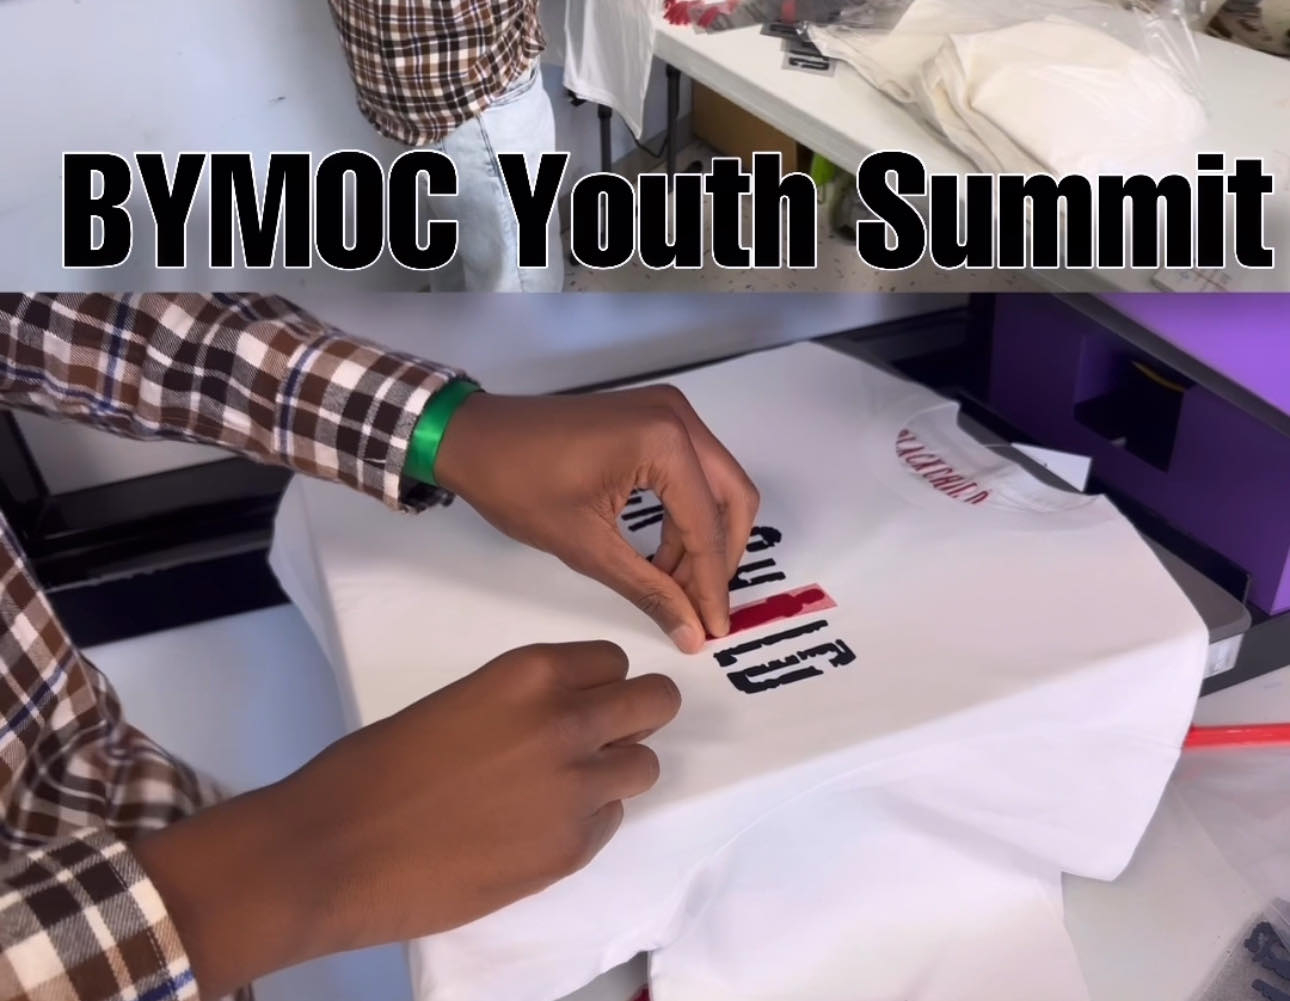 Youth Summit.jpg